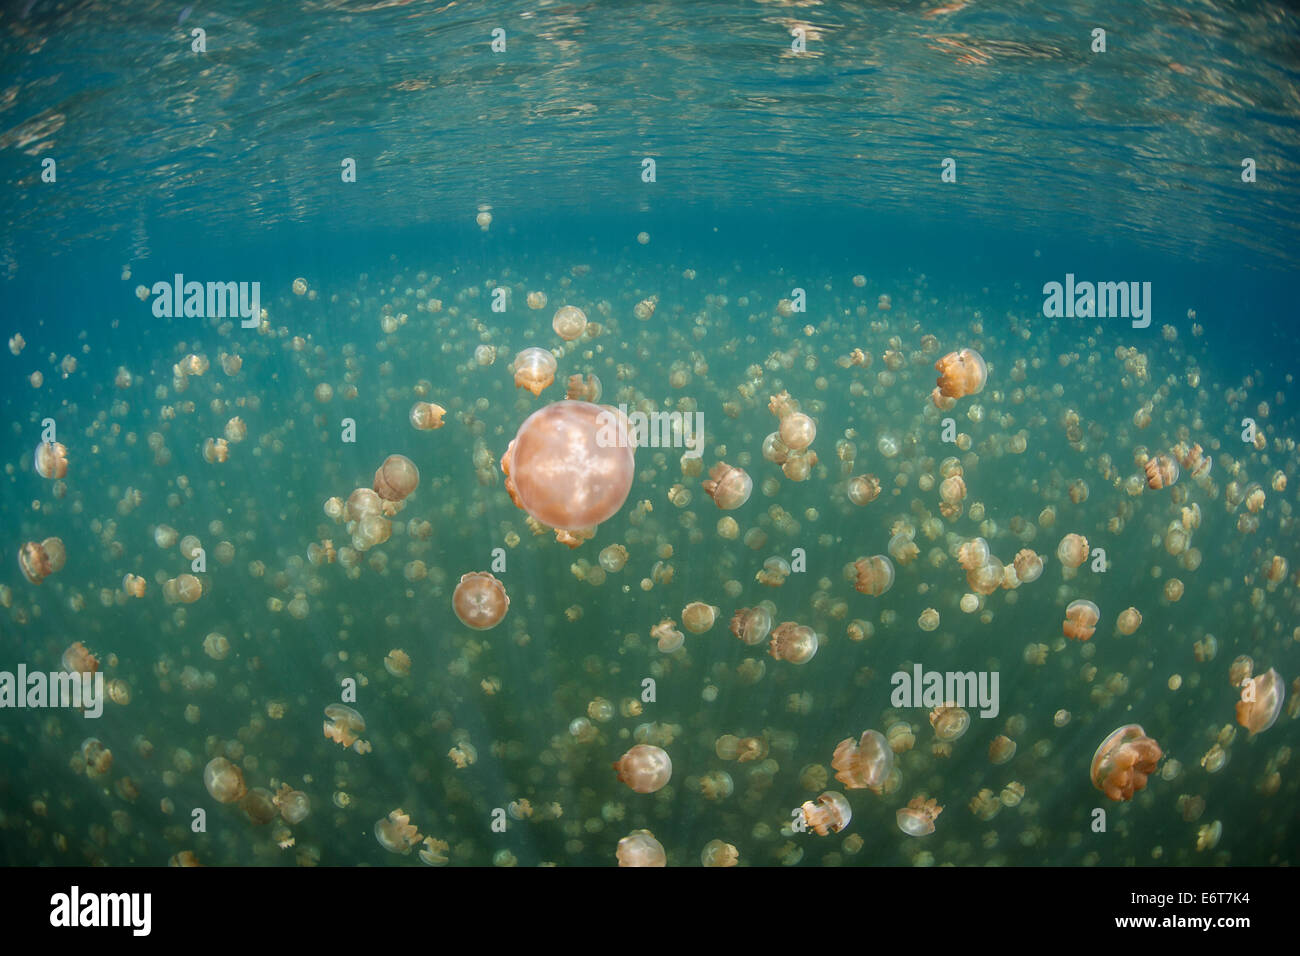 Mastigias Jellyfish in Jellyfish Lake, Mastigias papua etpisonii, Micronesia, Palau Stock Photo